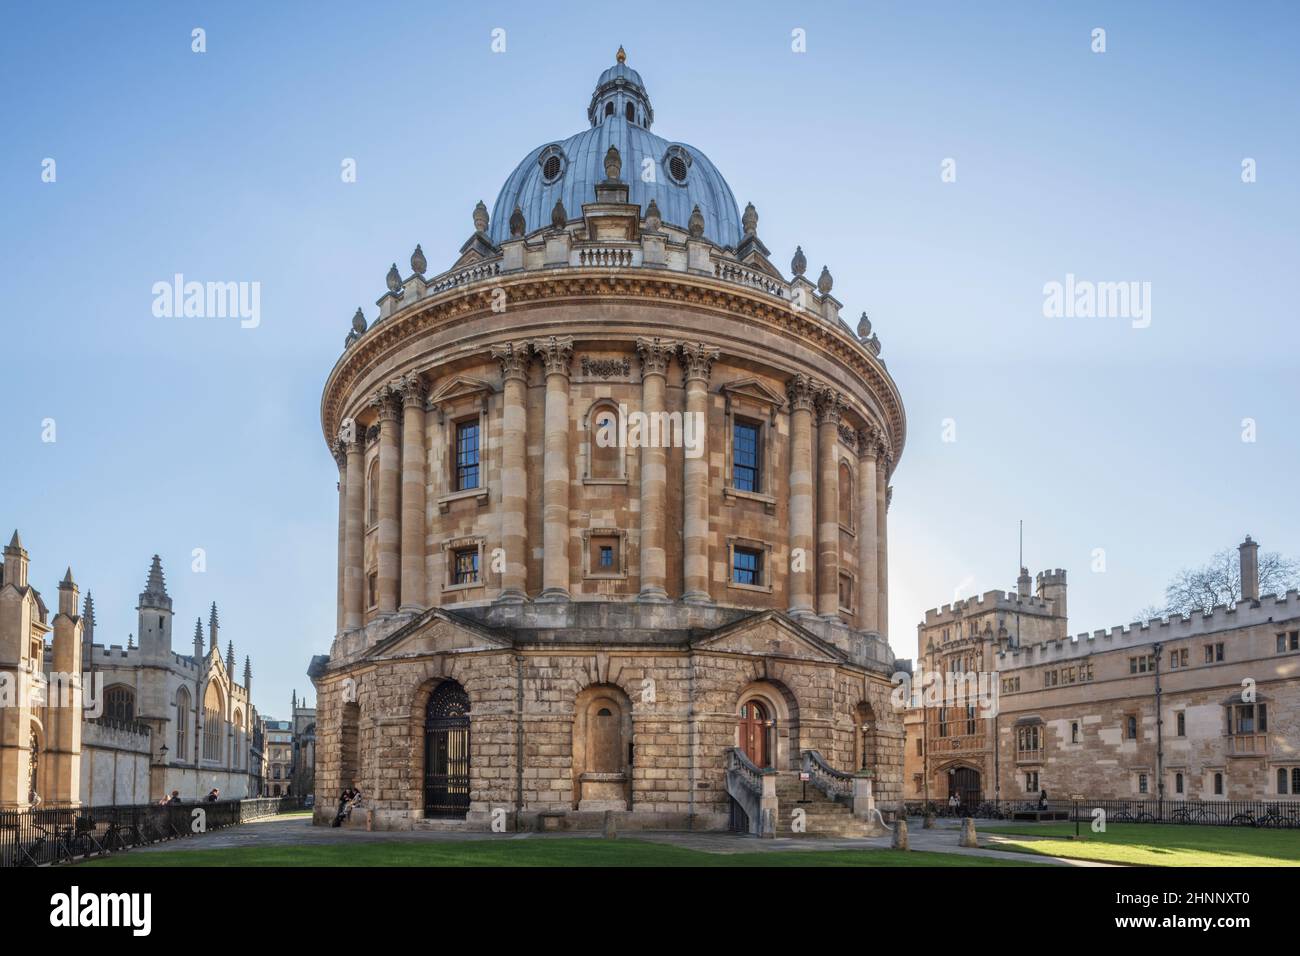 Radcliffe Camera (architetto: James Gibbs), parte della Bodleian Library, Brasenose & All Soul's colleges destra e sinistra di Frame, Università di Oxford, Regno Unito Foto Stock